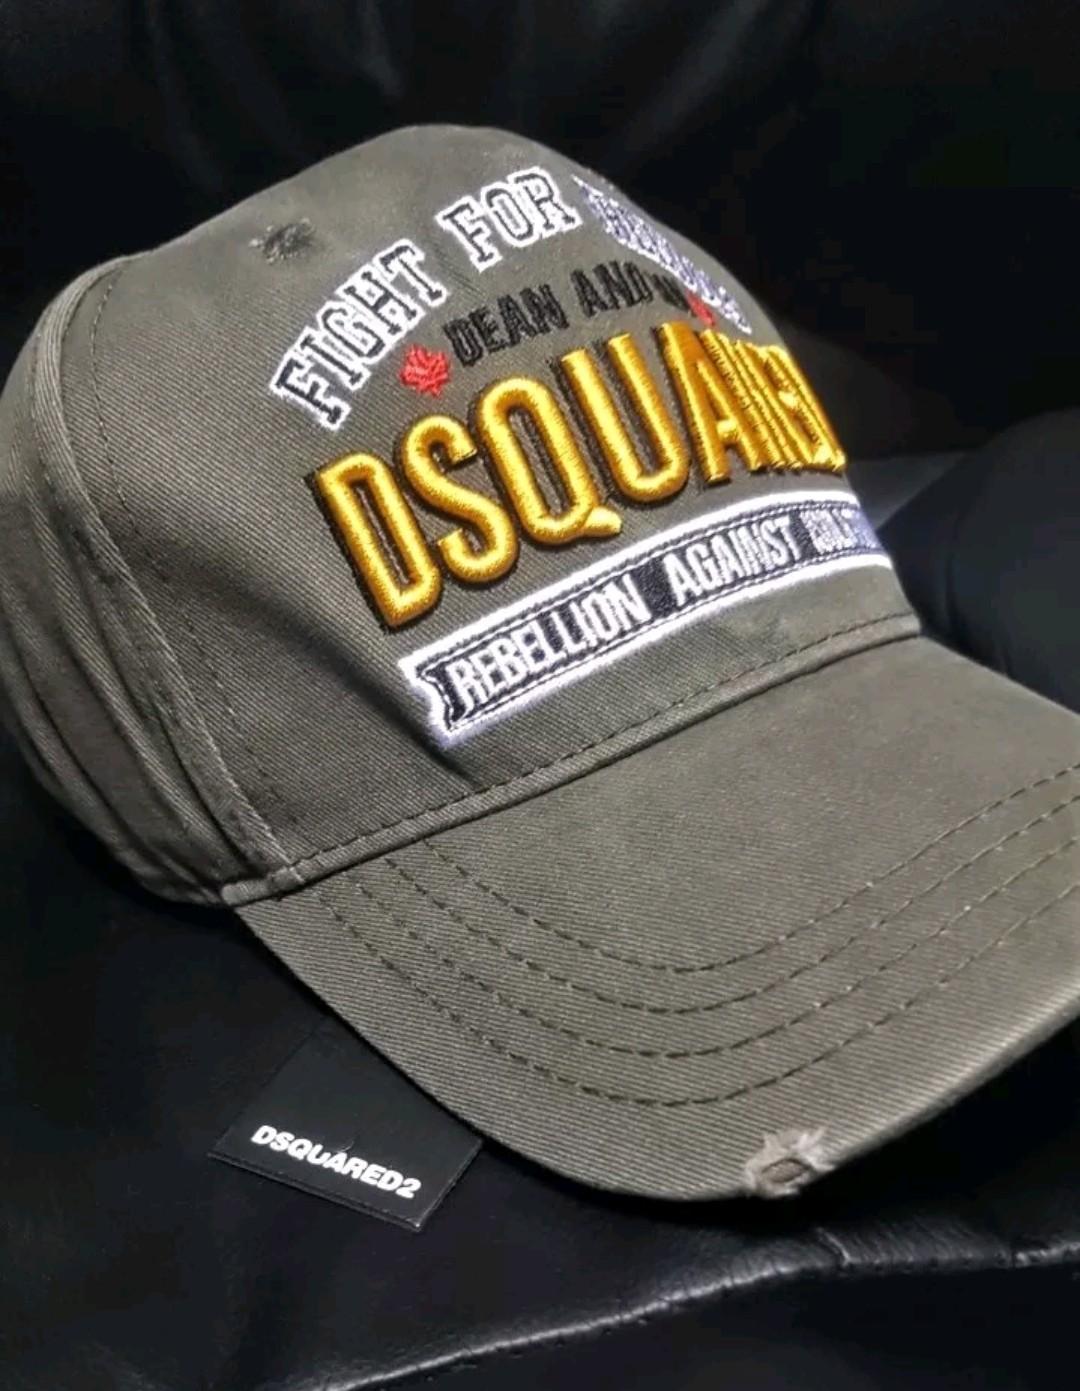 dsquared bobble hat